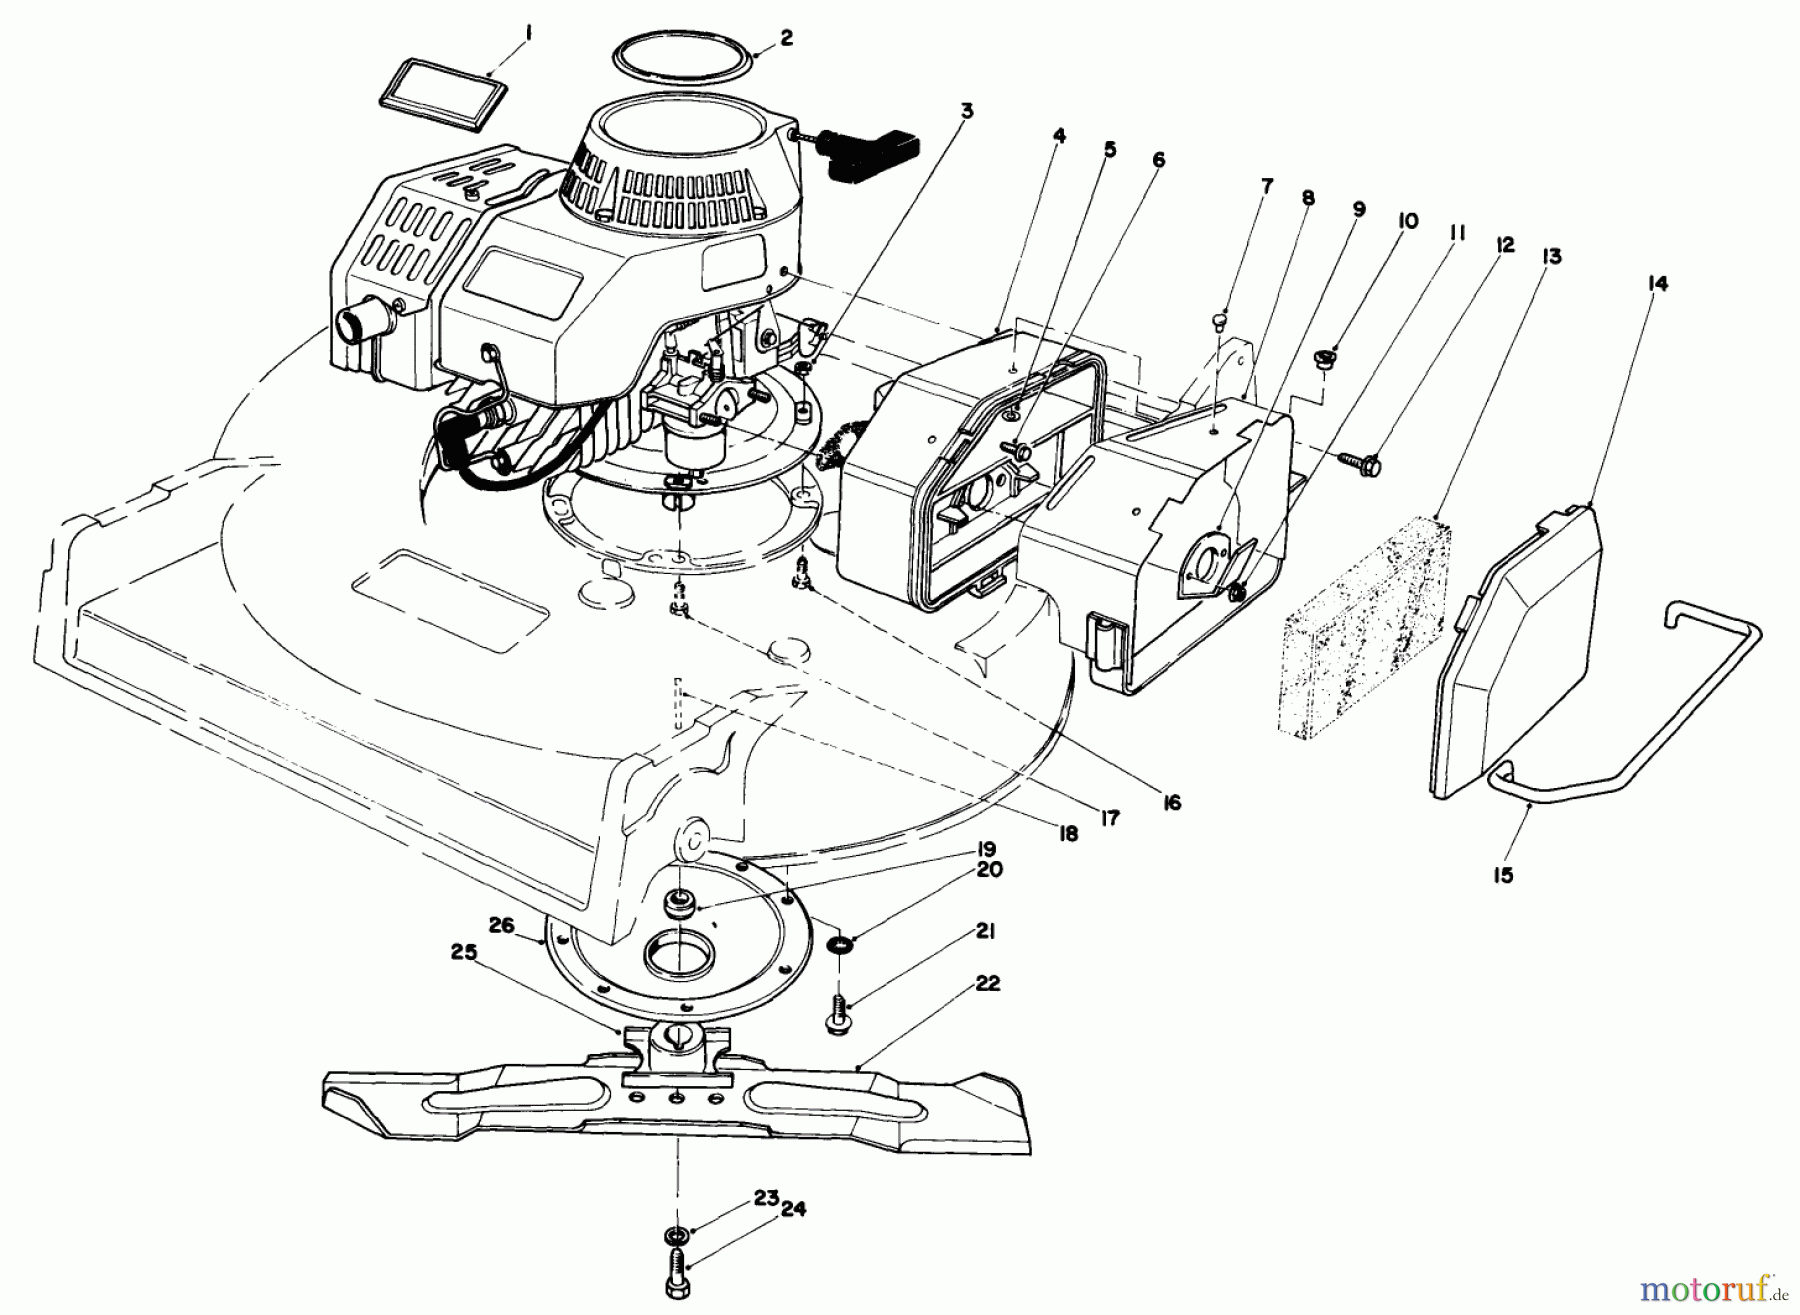  Toro Neu Mowers, Walk-Behind Seite 2 22030 - Toro Lawnmower, 1988 (8000001-8999999) ENGINE ASSEMBLY (MODEL 22030)